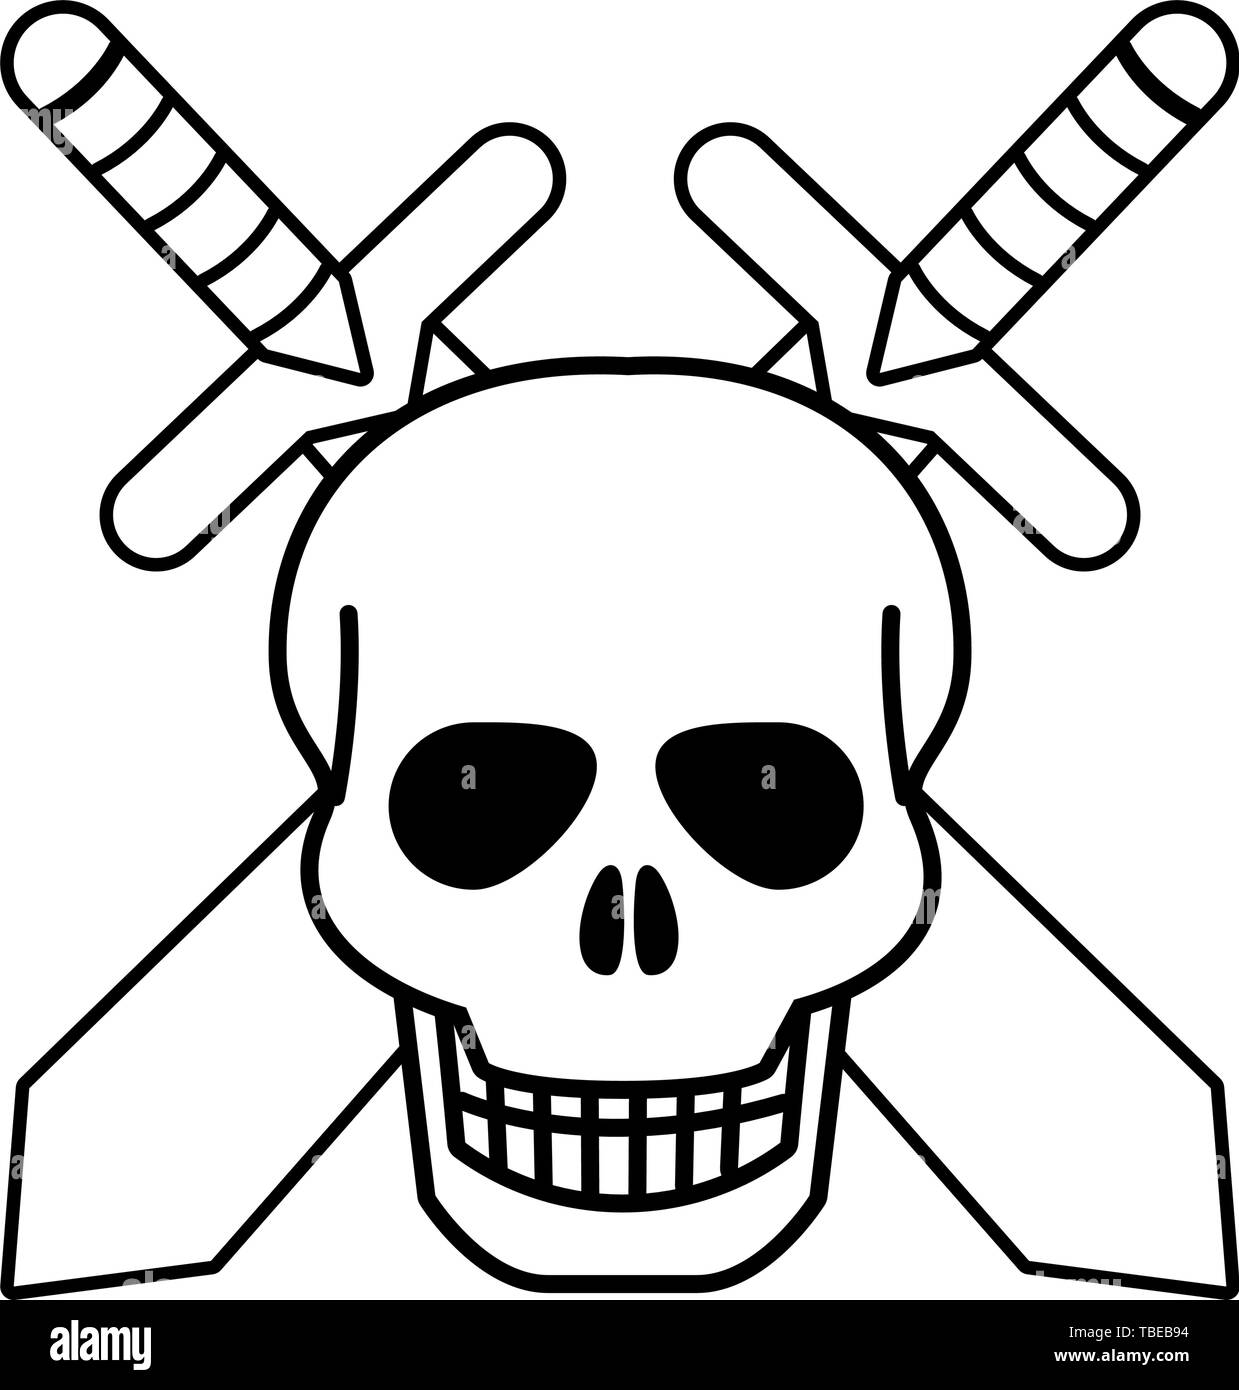 Scary Skull Symbol Logo Tattoo Design Stock Vector Royalty Free  1909931692  Shutterstock